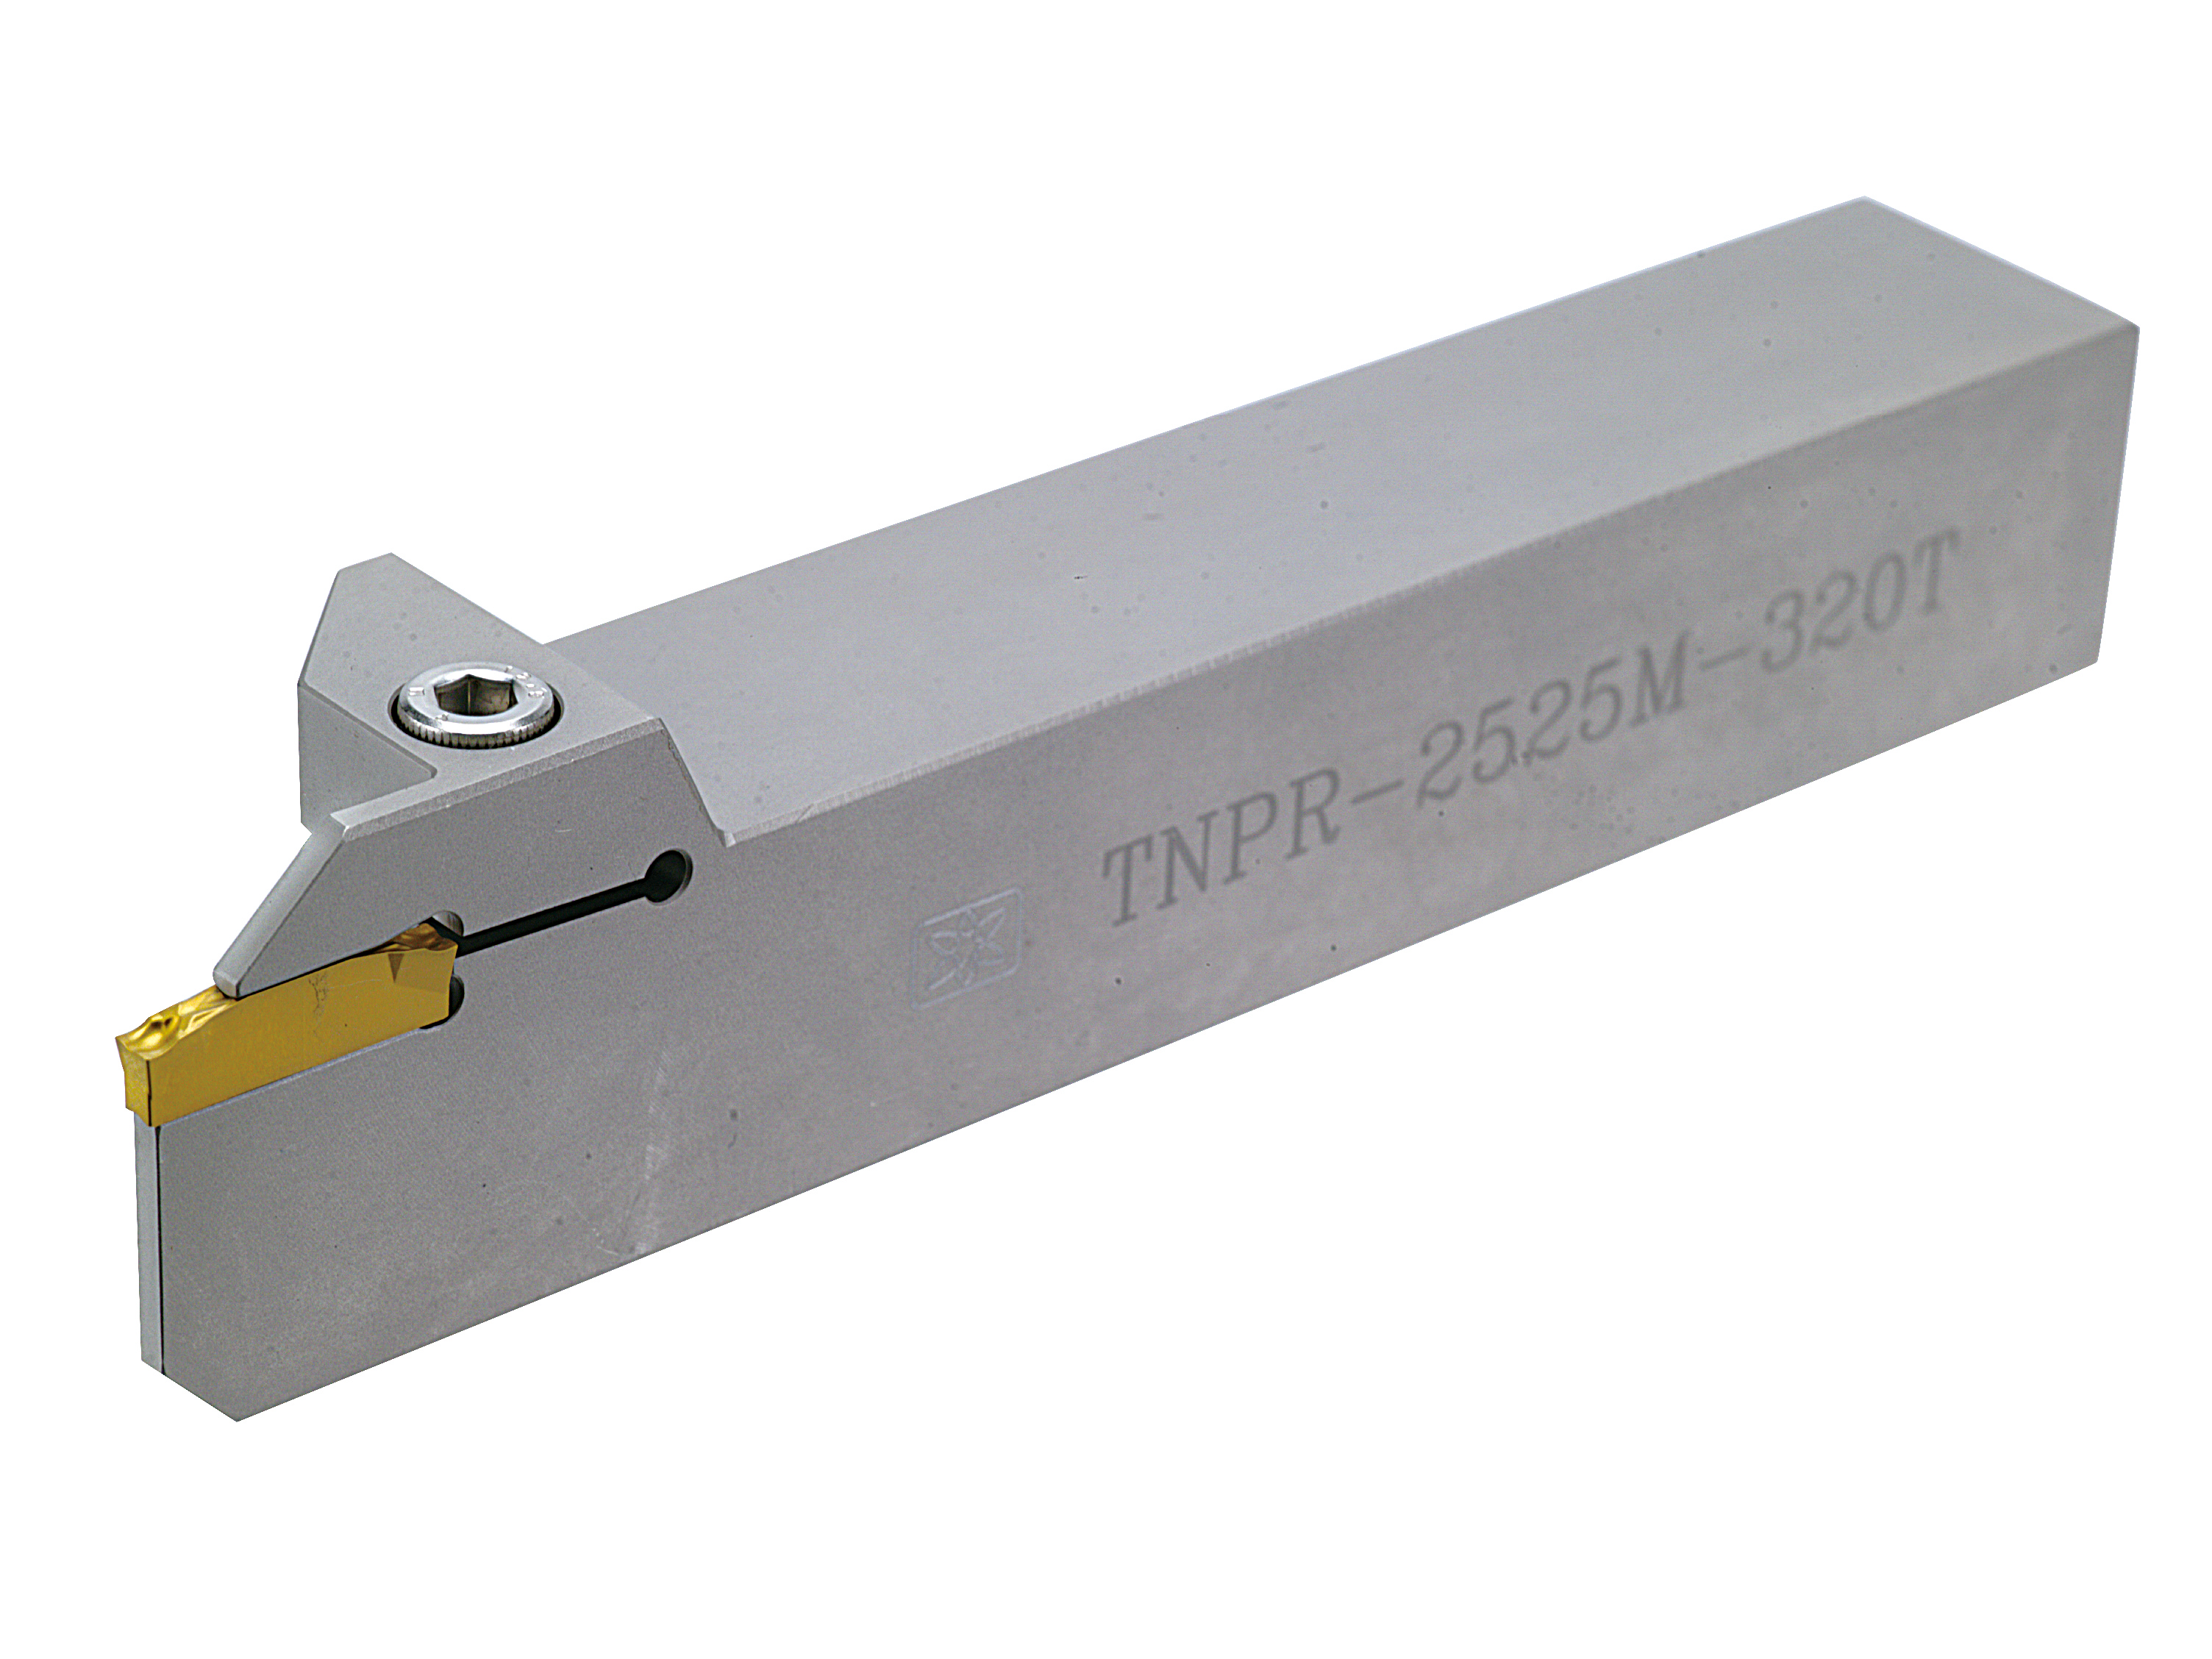 Catalog|TNPR (TN300...) External Groovin Tool Holder